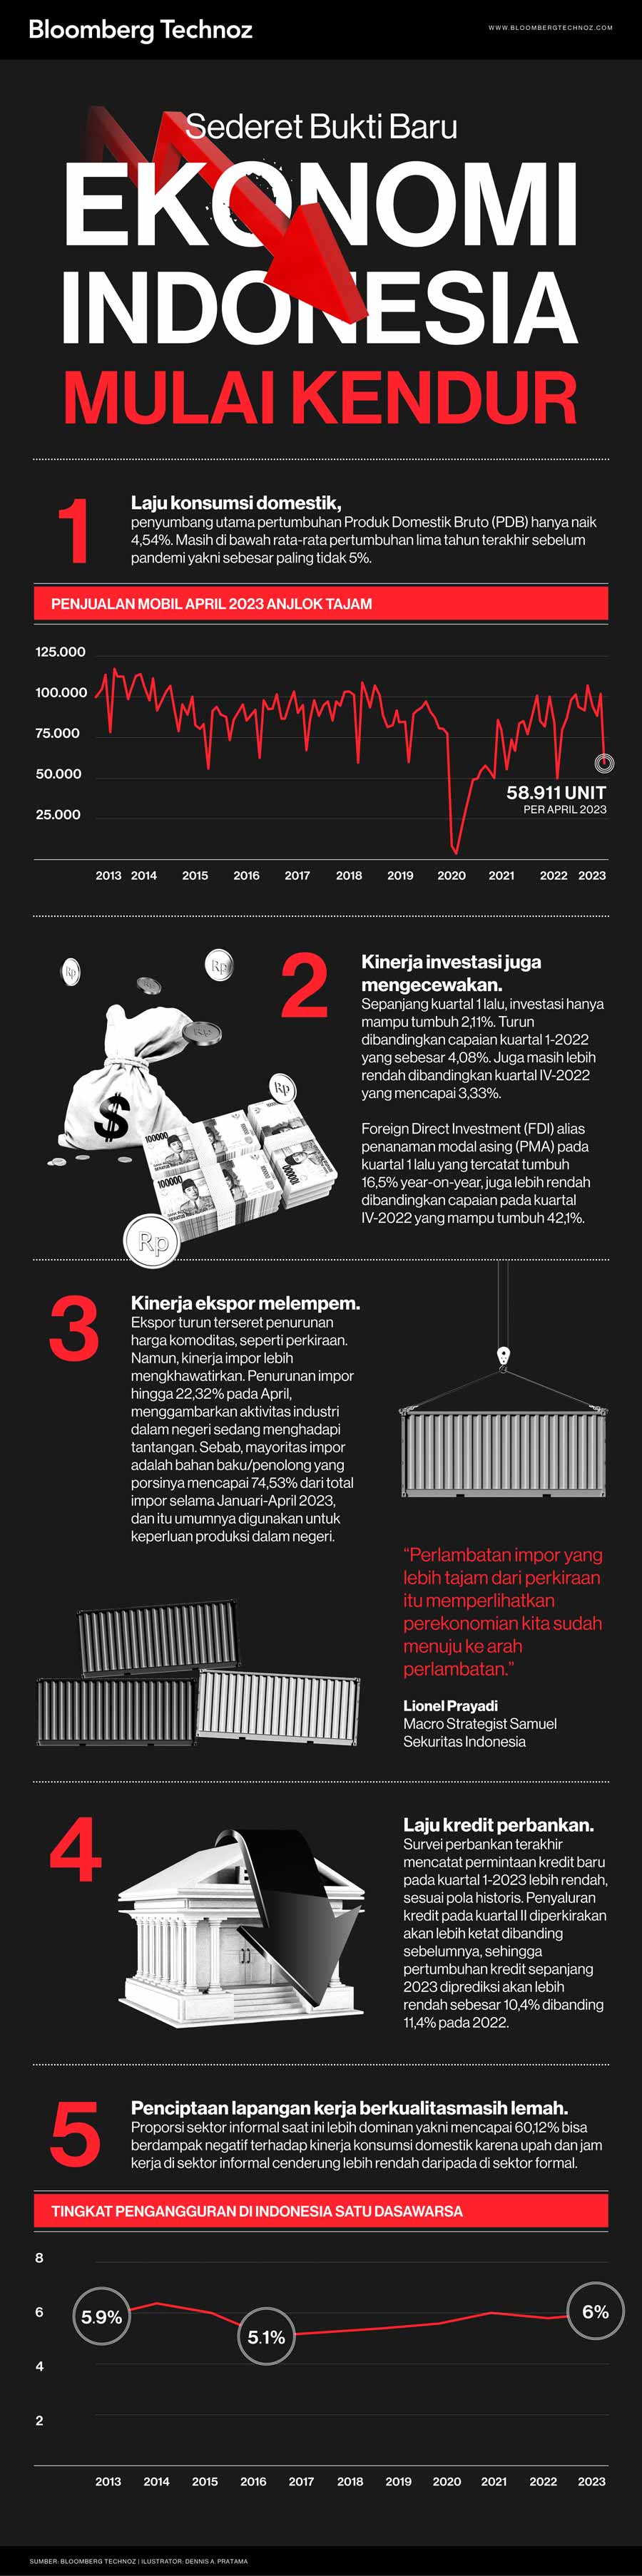 Sederet Bukti Baru Ekonomi Indonesia Mulai Kendur (Infografis/Bloomberg Technoz)